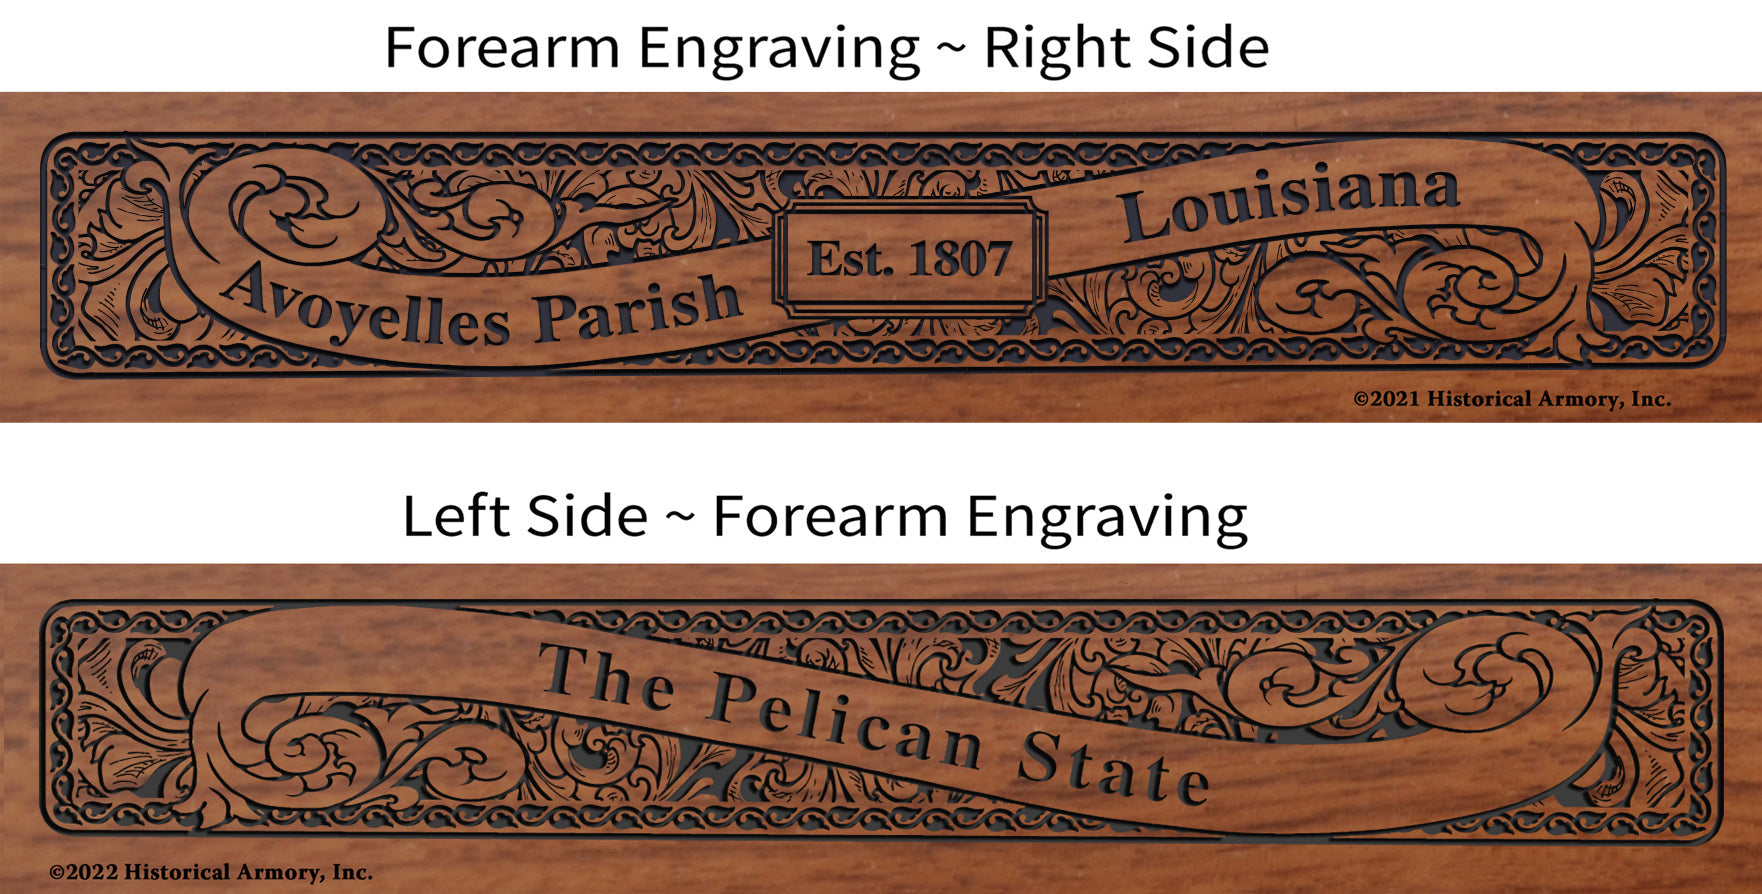 Avoyelles Parish Louisiana Engraved Rifle Forearm Right-Side